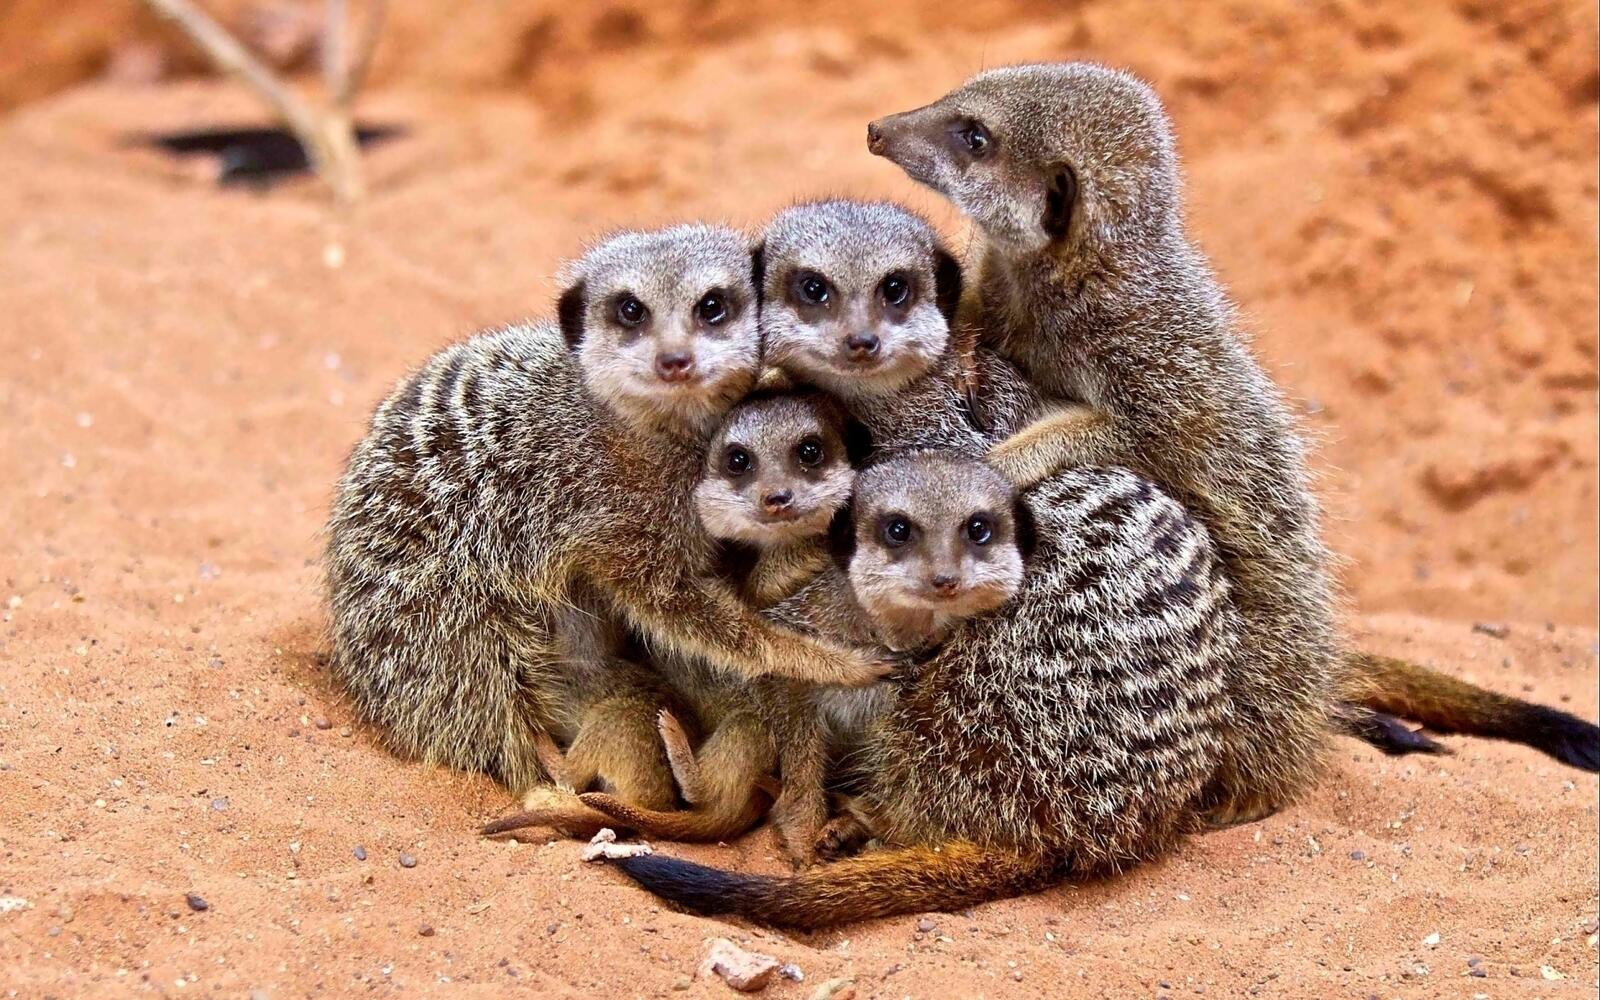 Wallpapers meerkats family little animals on the desktop